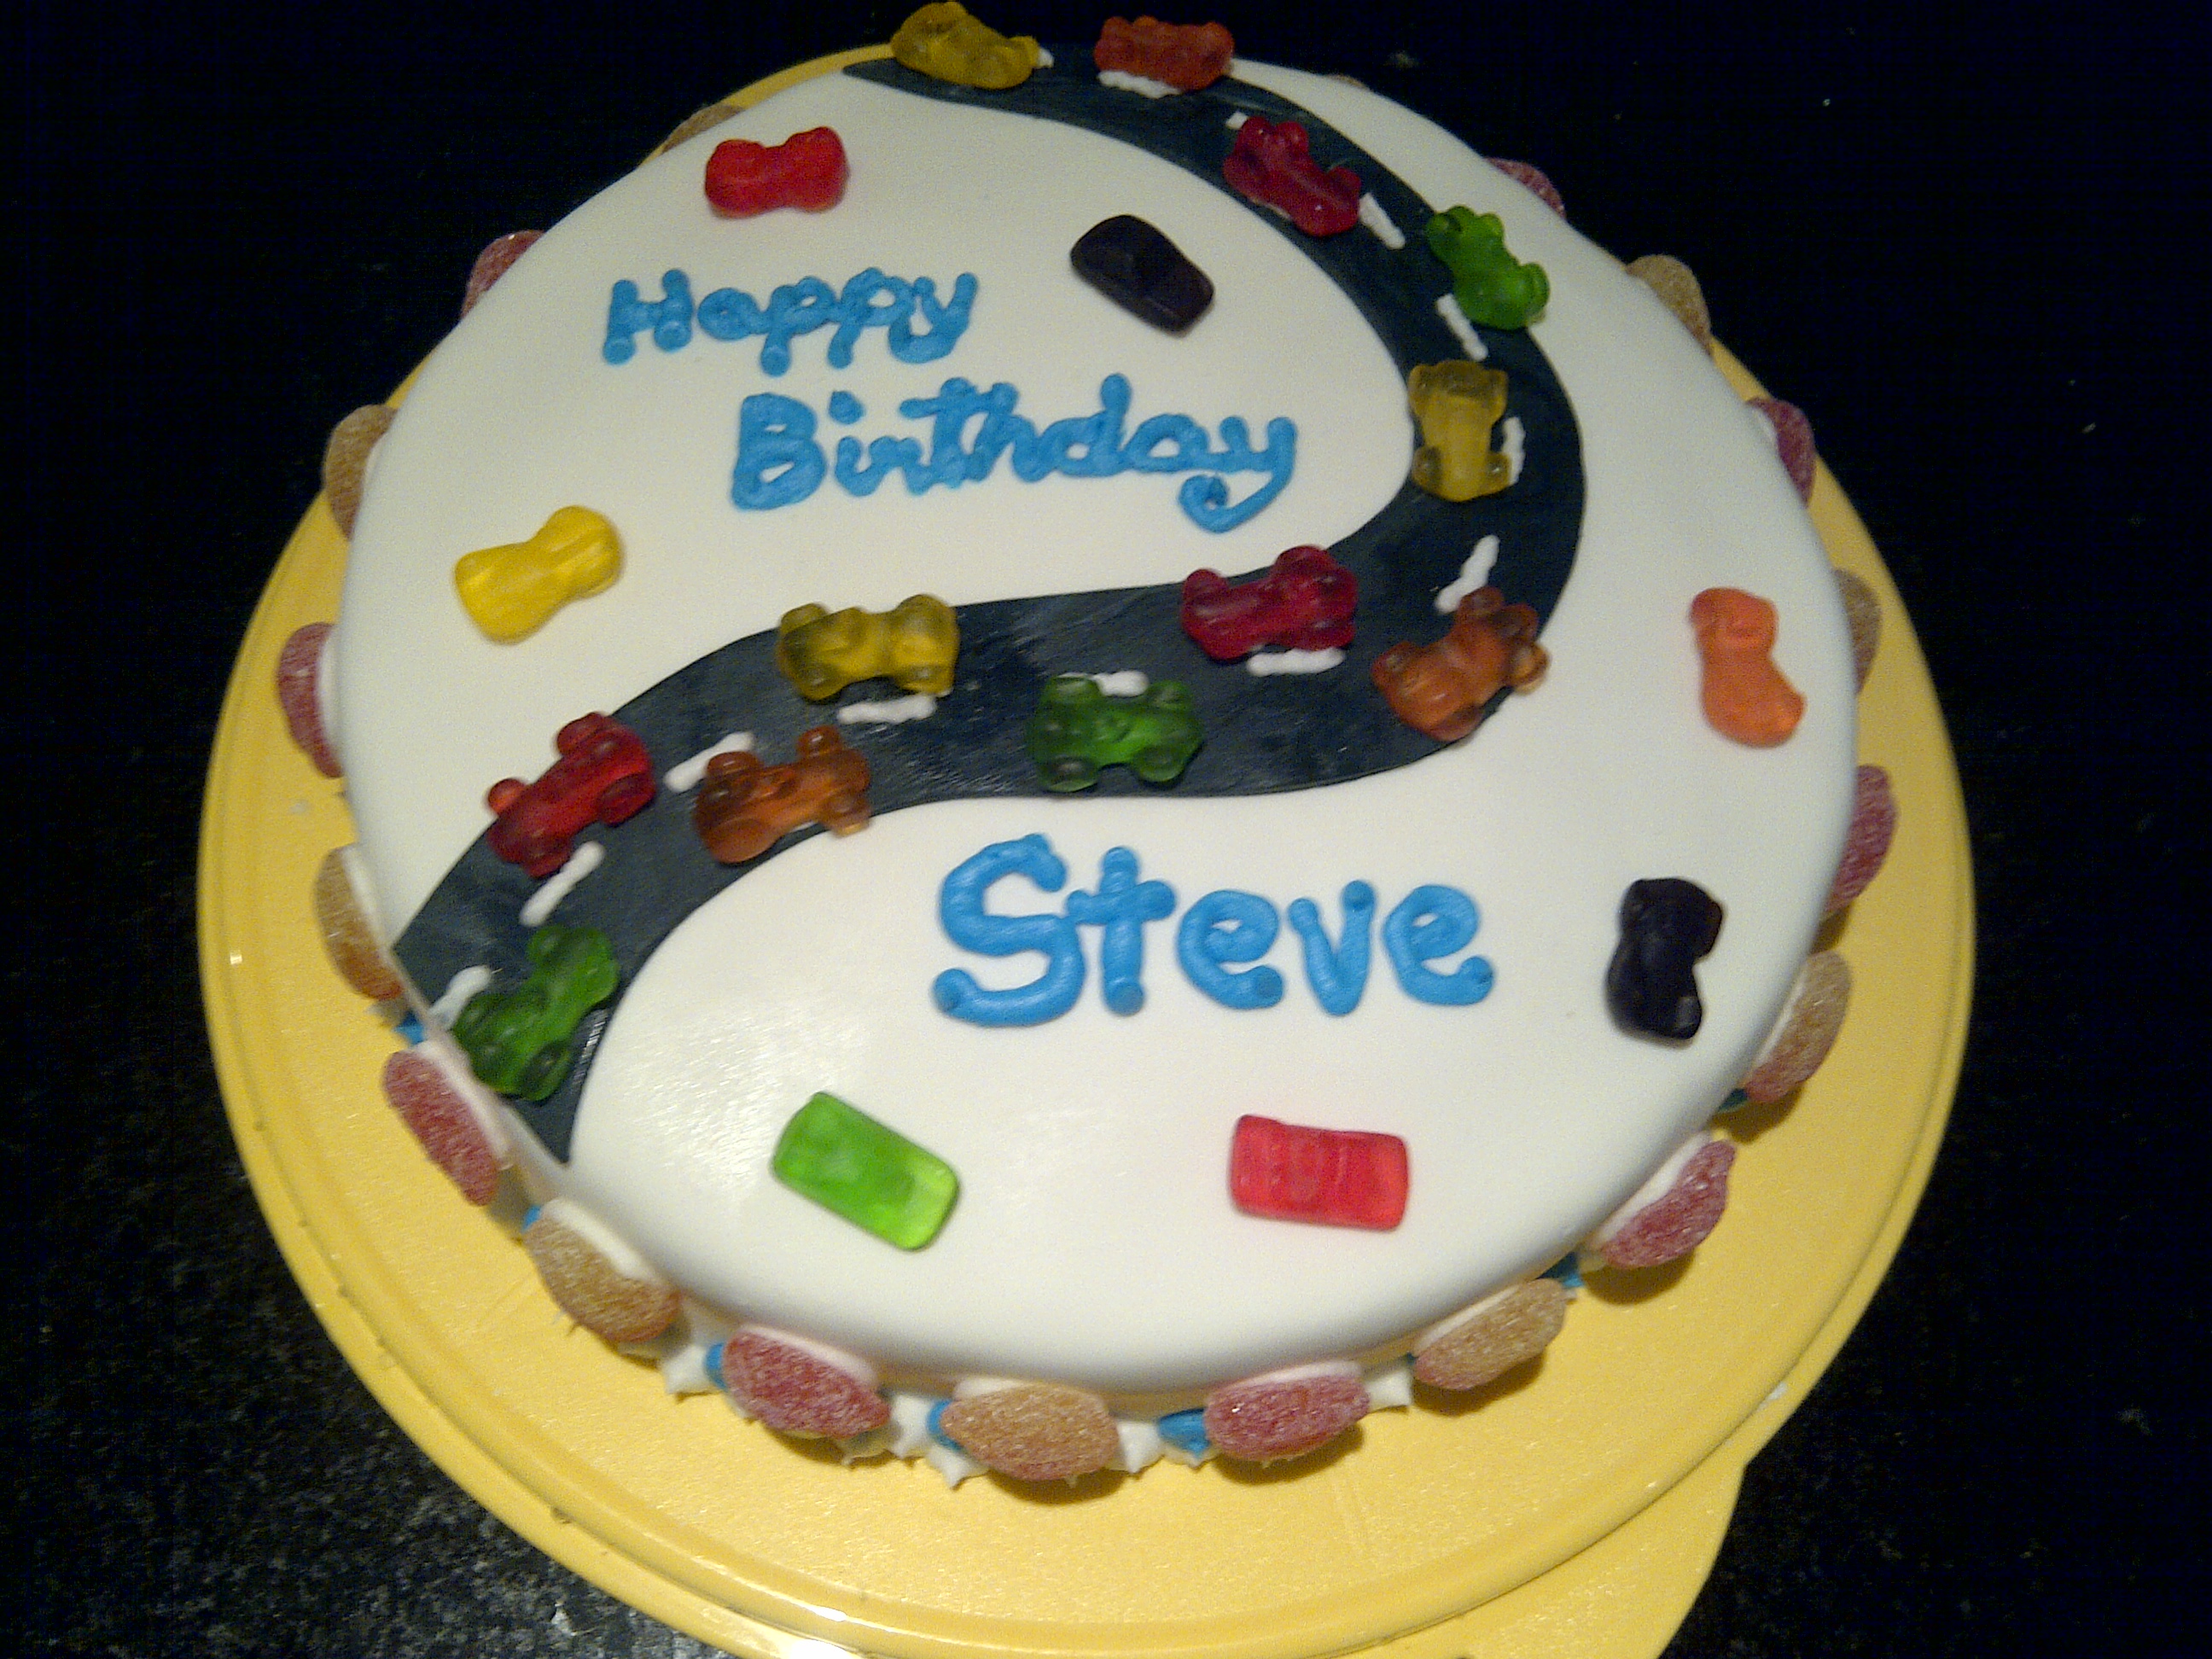 7 Birthday Cakes Saying Happy Birthday Steven Photo Happy Birthday Steven Cake Happy Birthday